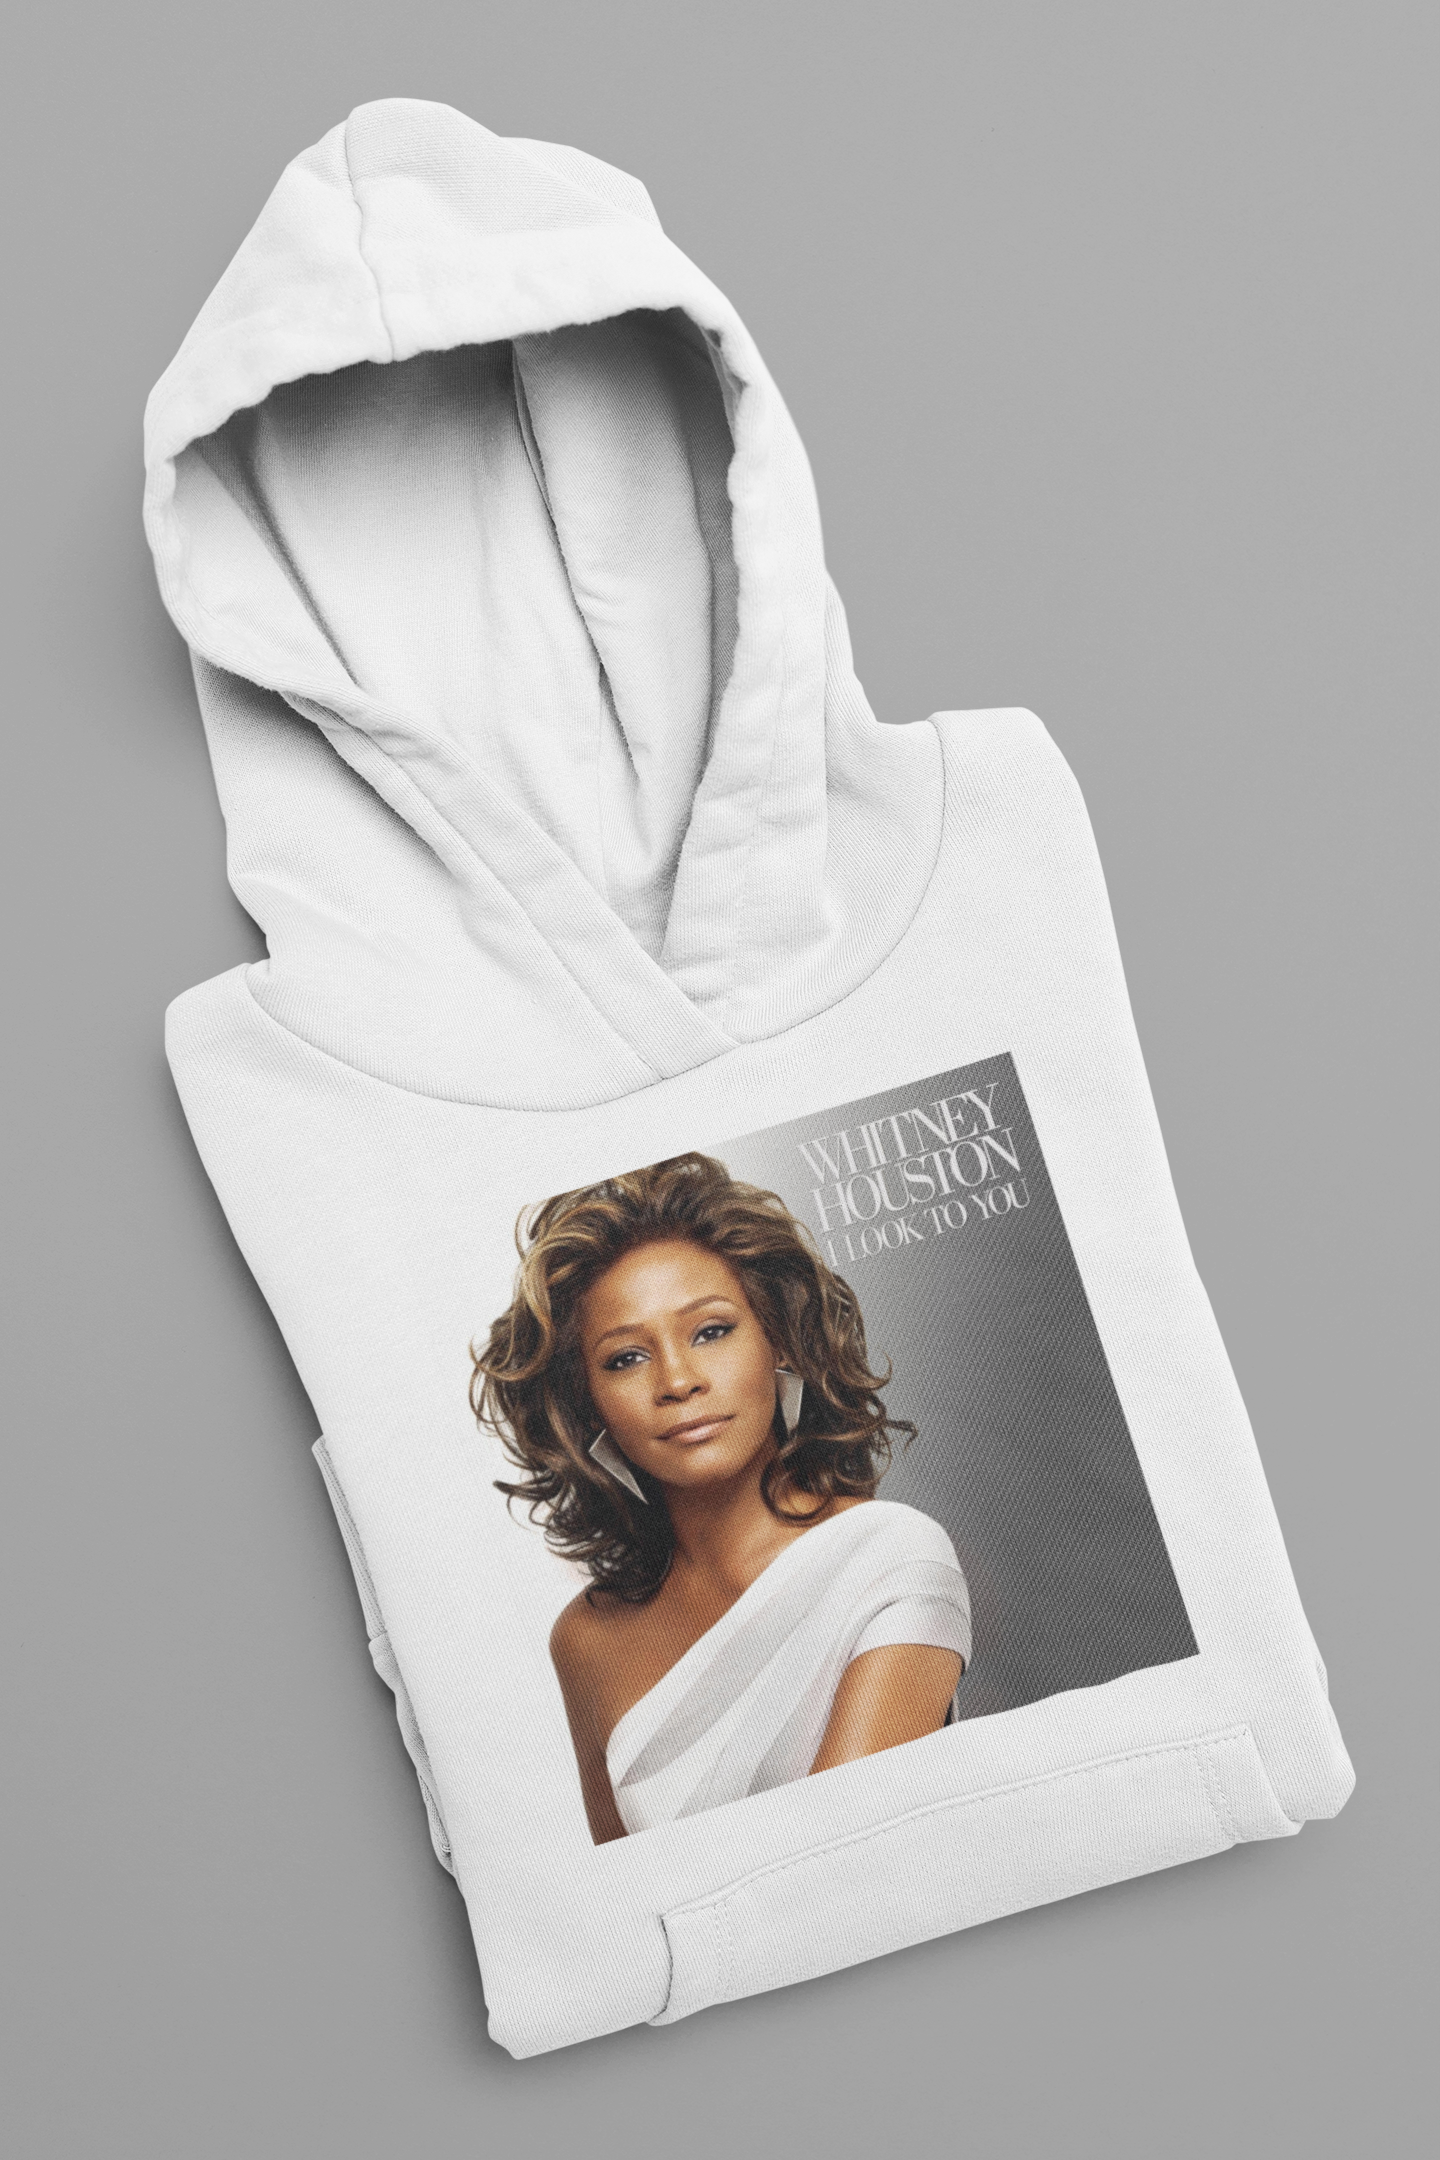 Moletom "I Look to You - Whitney Houston" - Álbum - Música